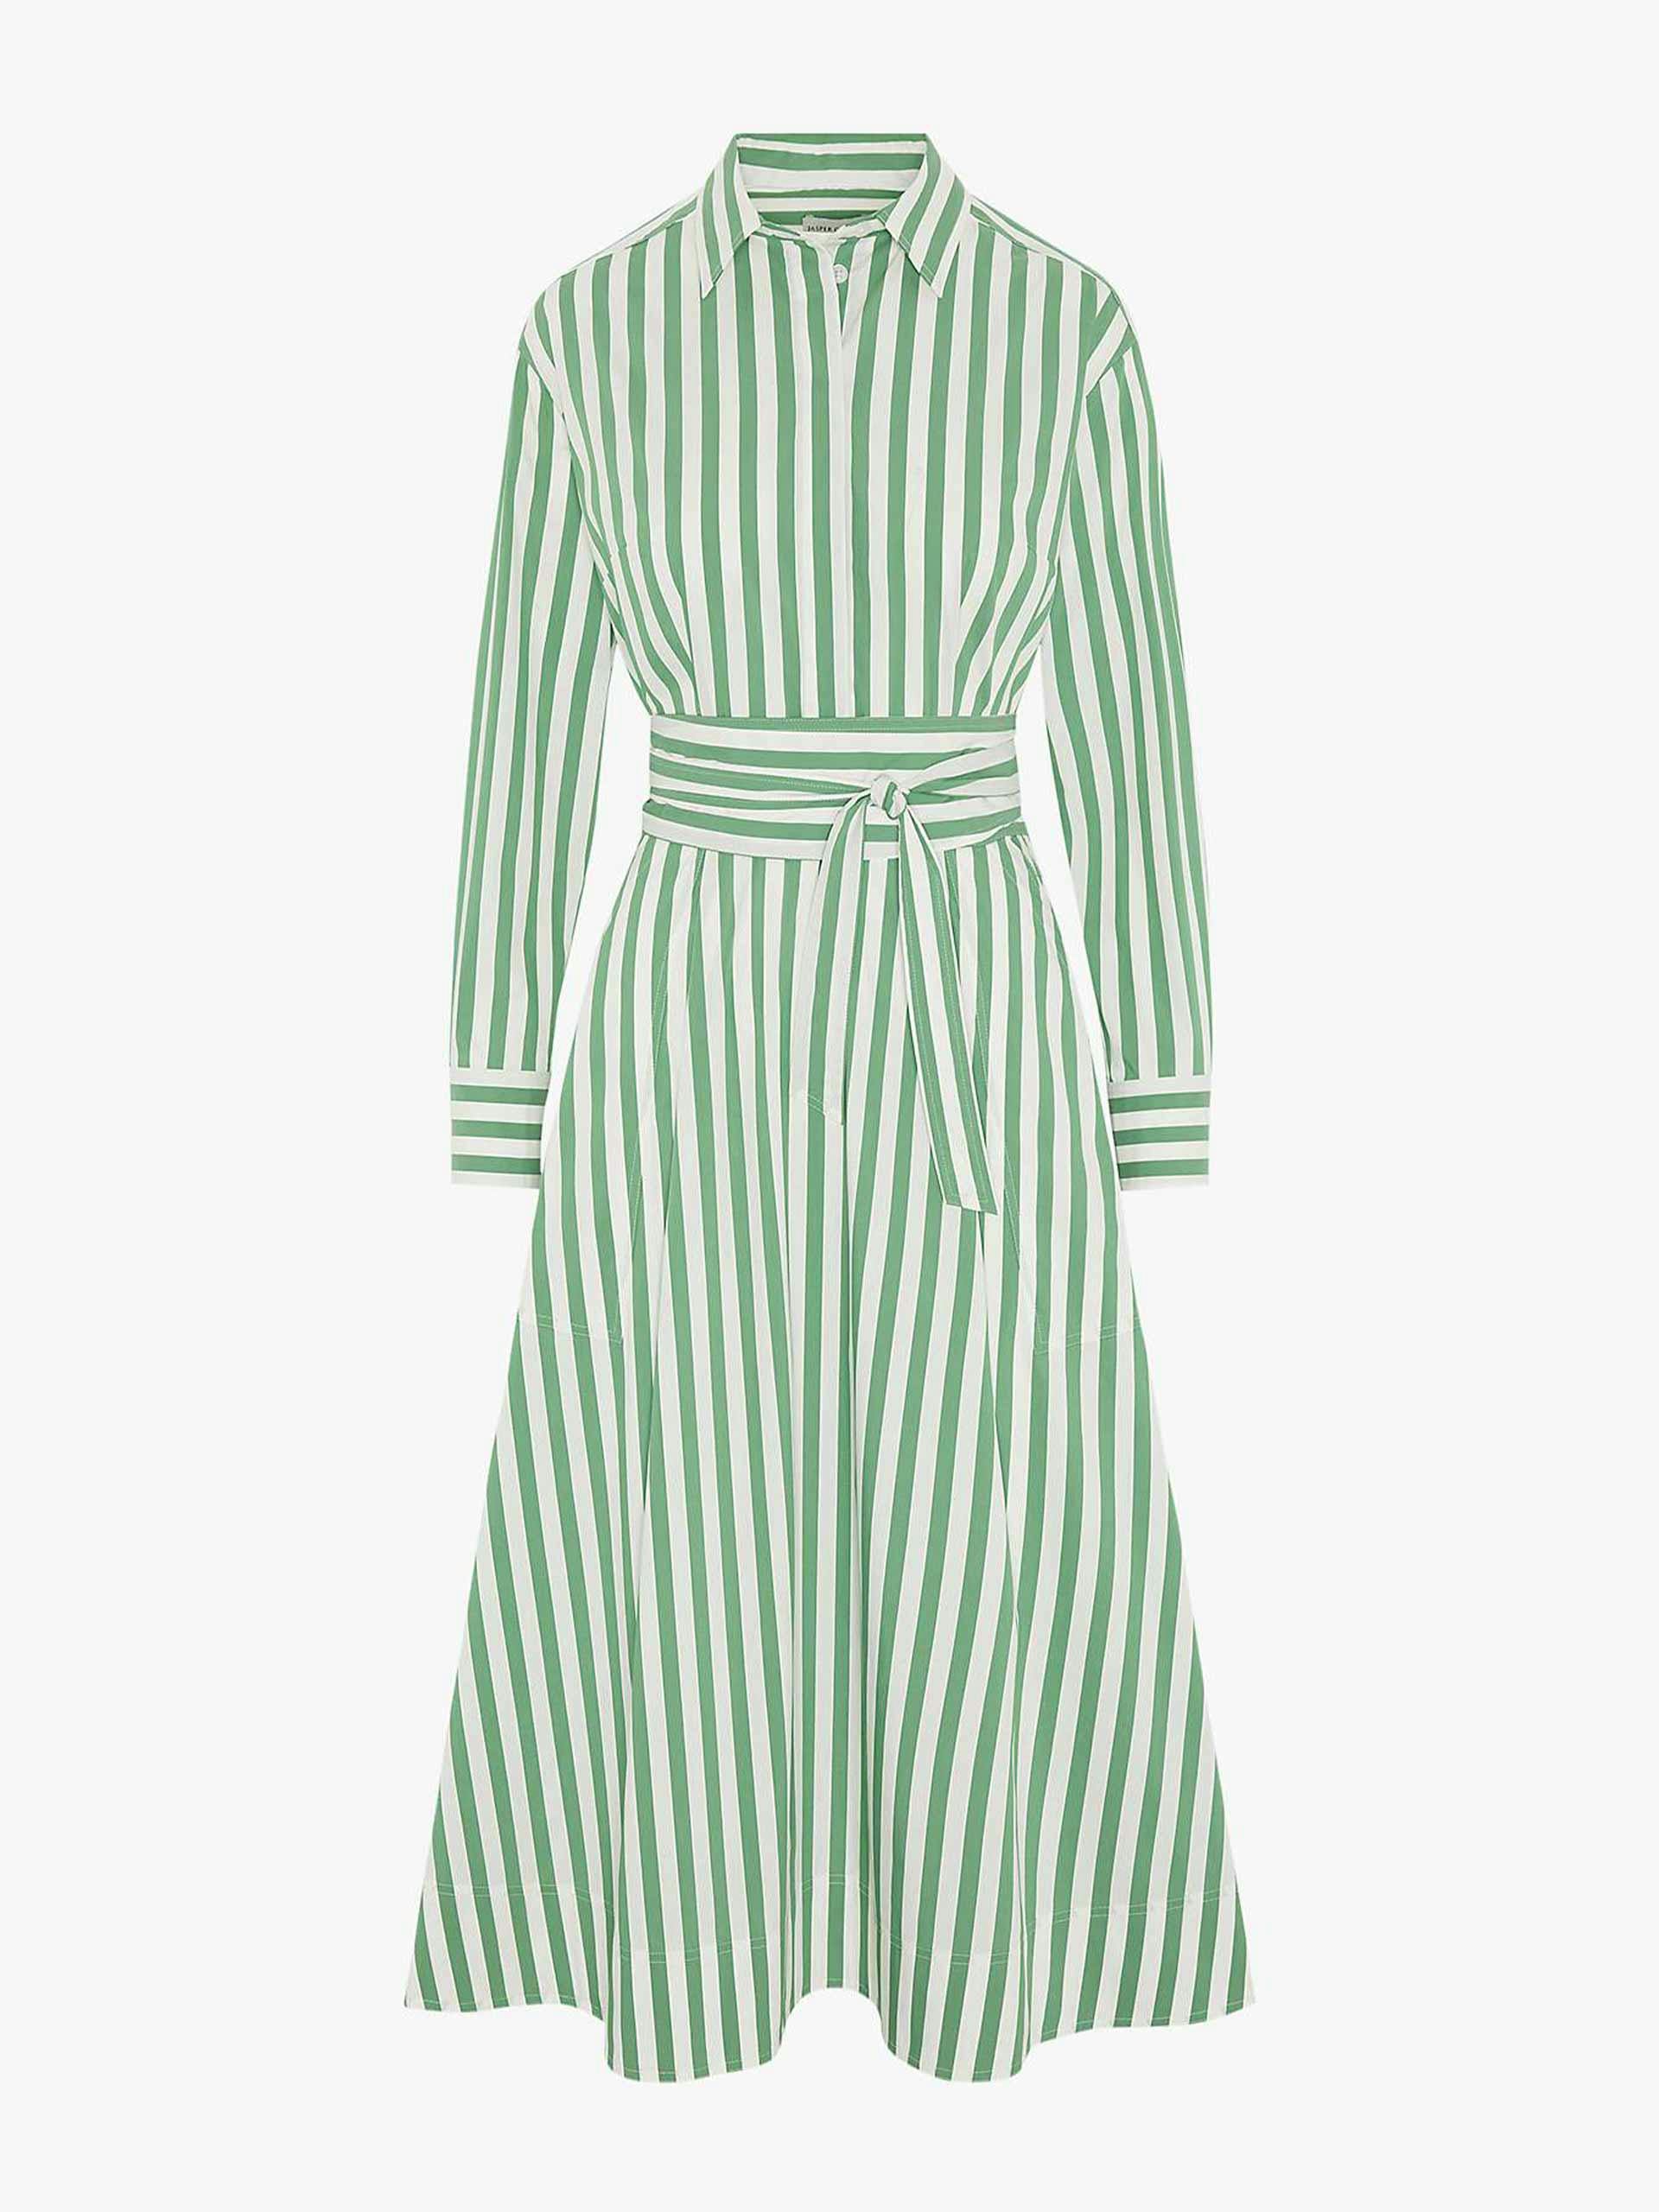 Full skirt shirt midi dress in green stripe